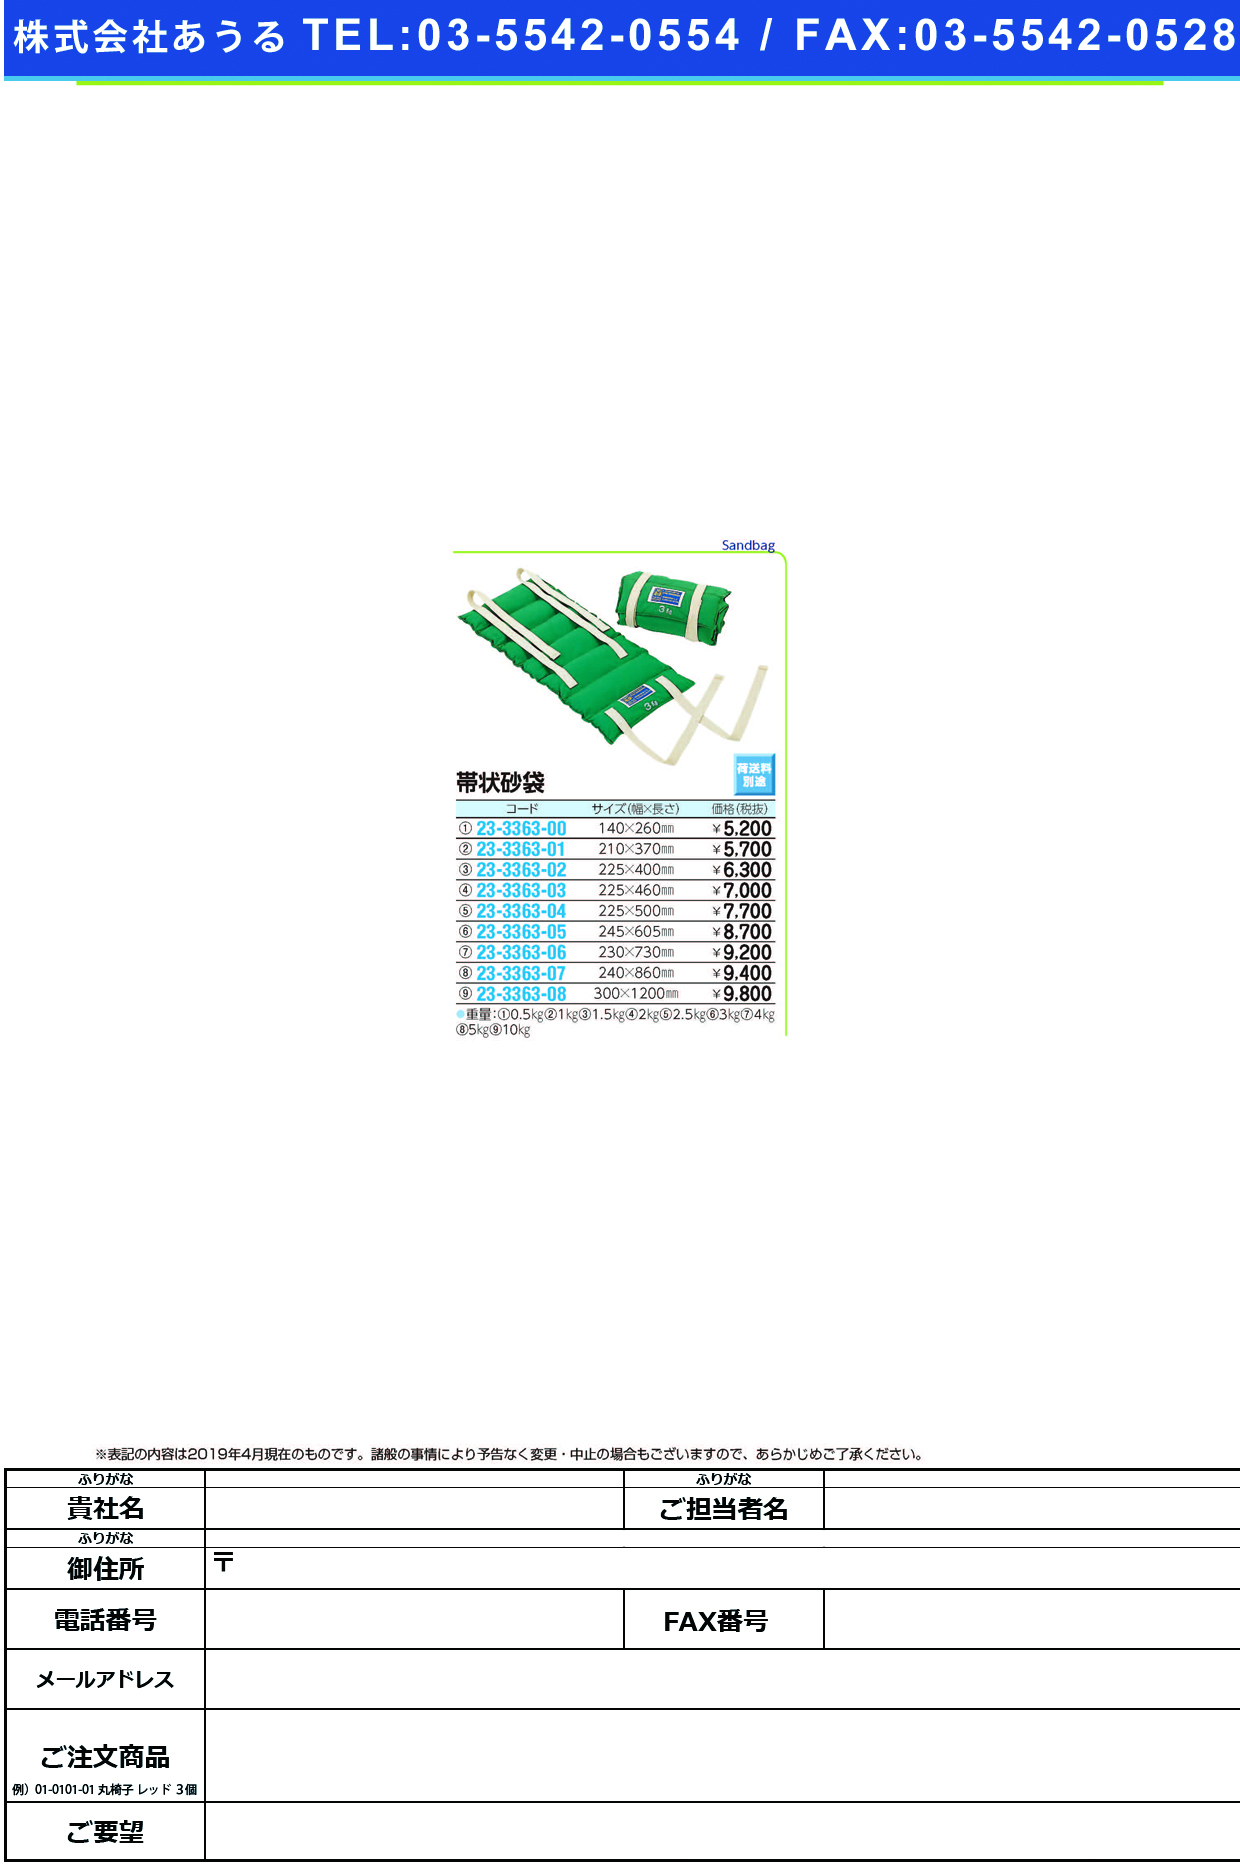 (23-3363-08)帯状砂袋 R-526(10KG) ｵﾋﾞｼﾞｮｳｽﾅﾌﾞｸﾛ【1個単位】【2019年カタログ商品】